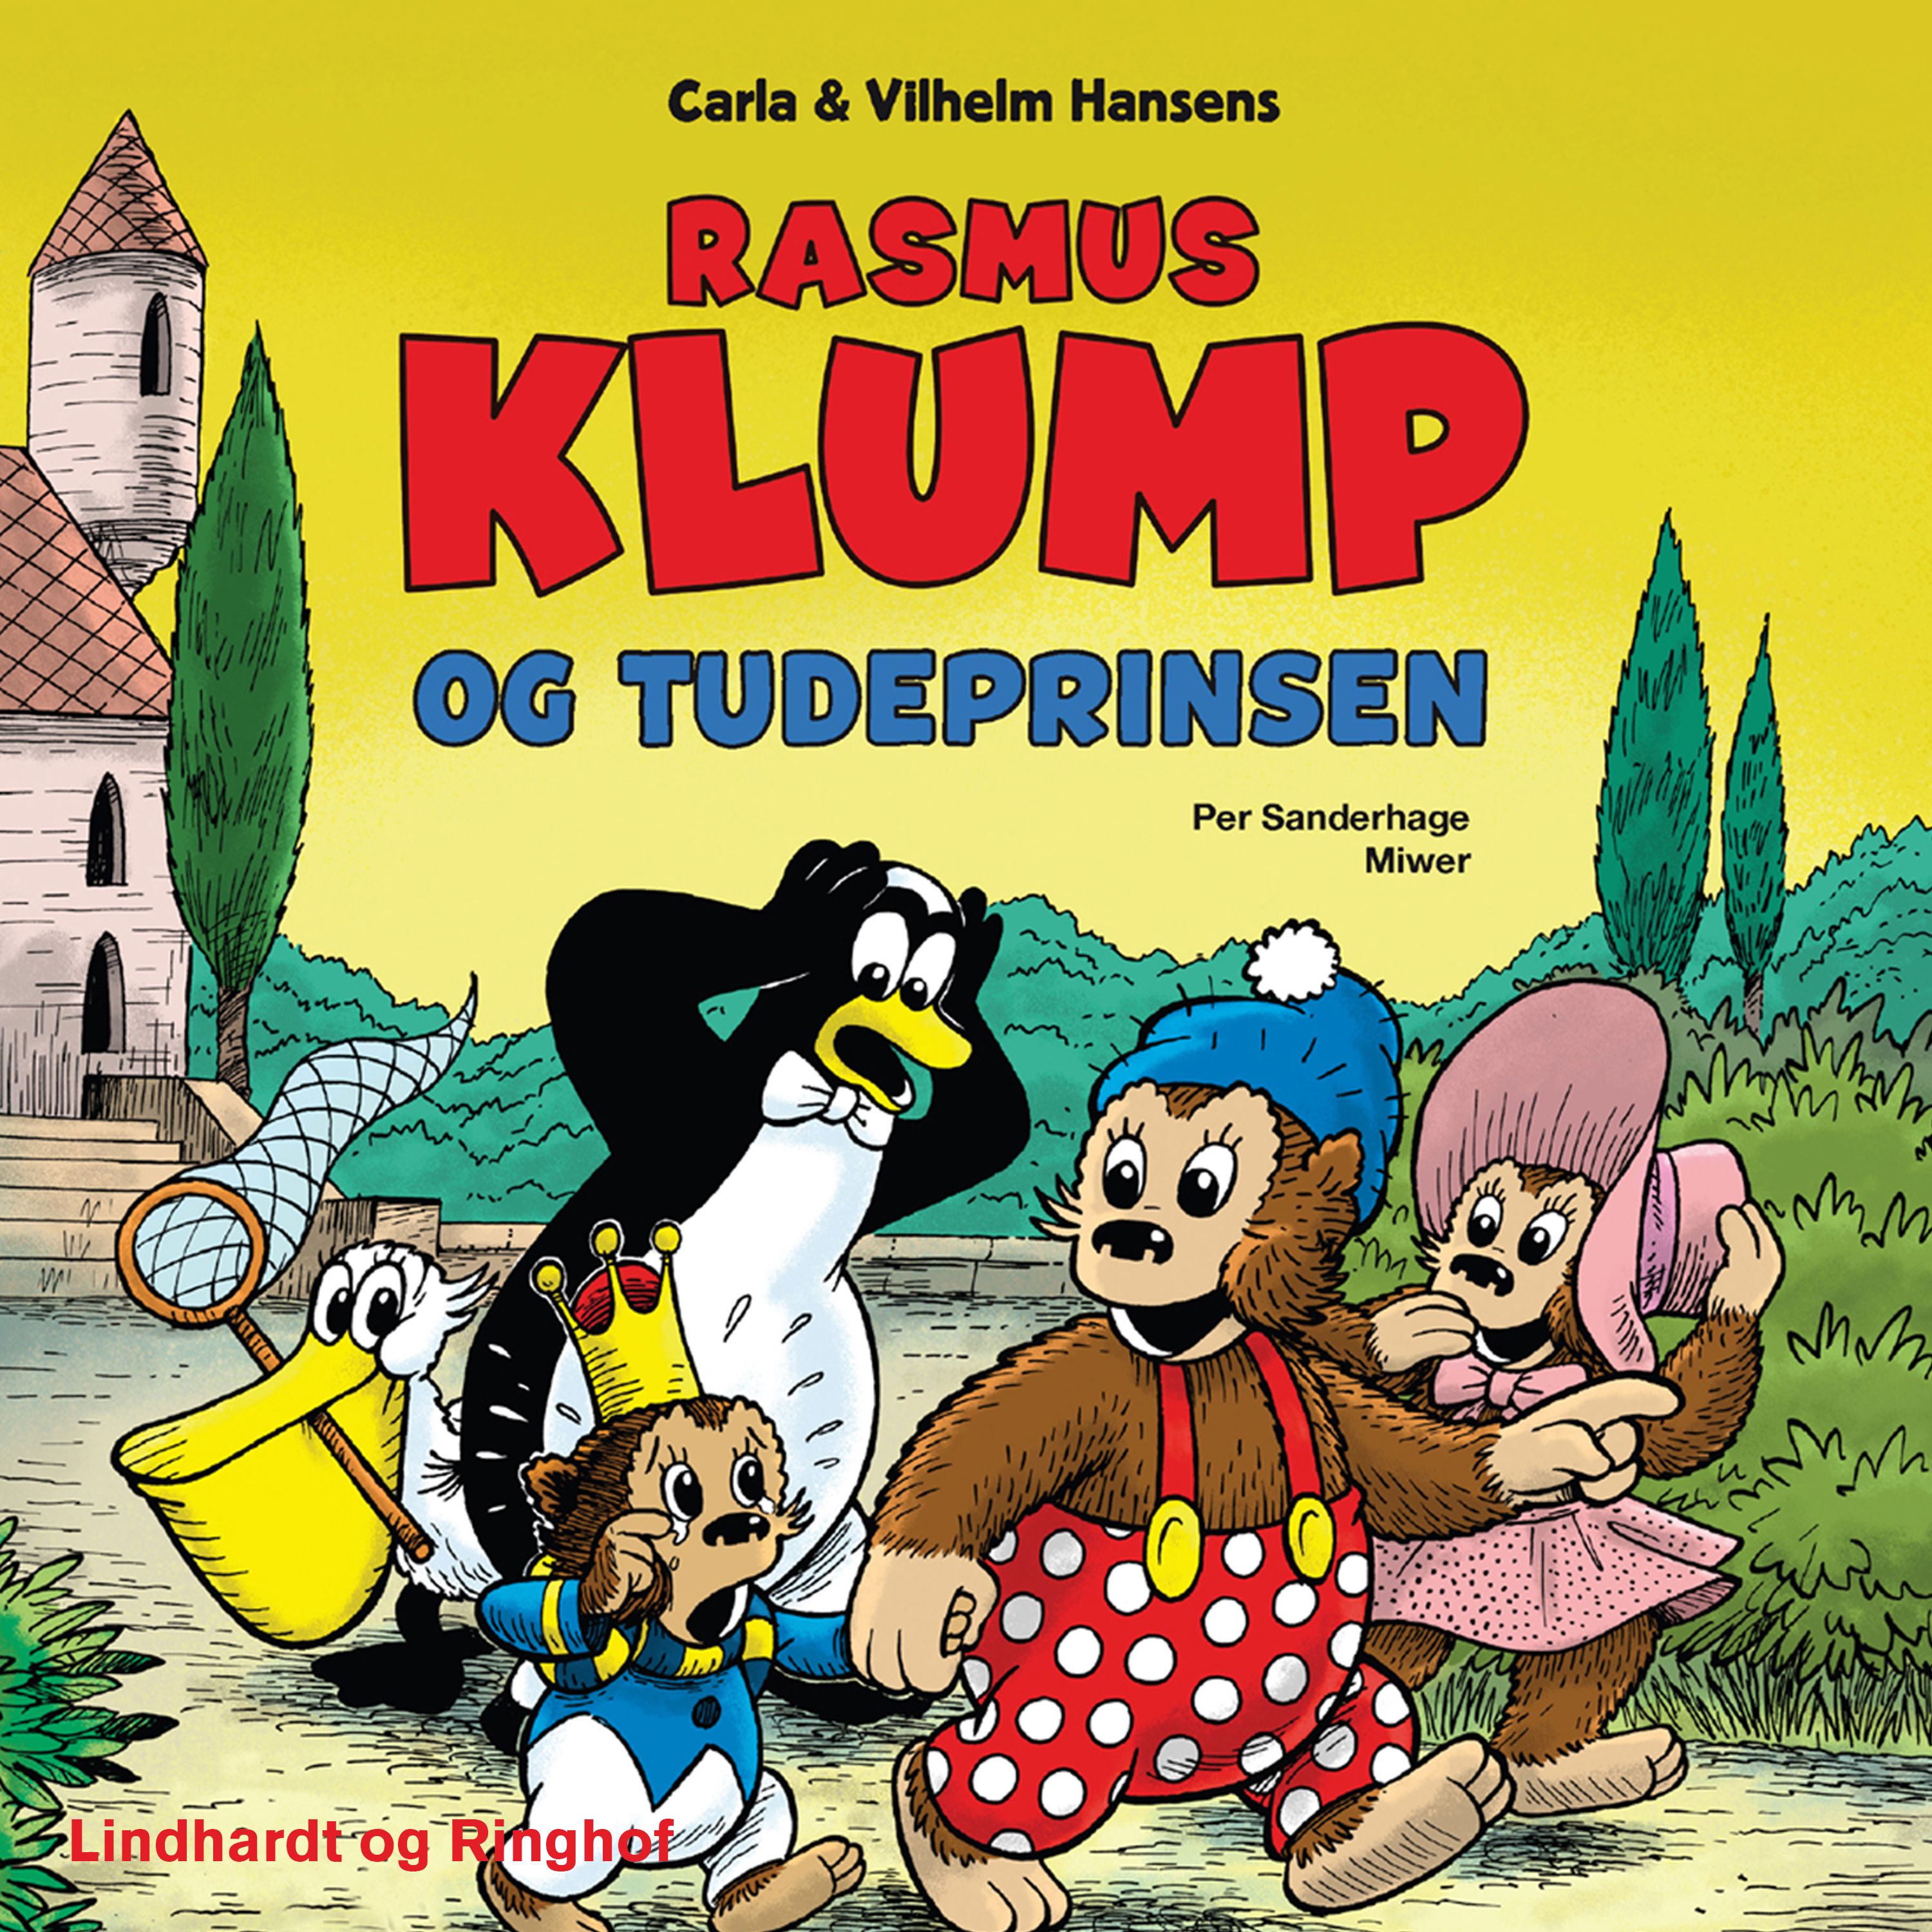 Rasmus Klump og tudeprinsen, ljudbok av Per Sanderhage